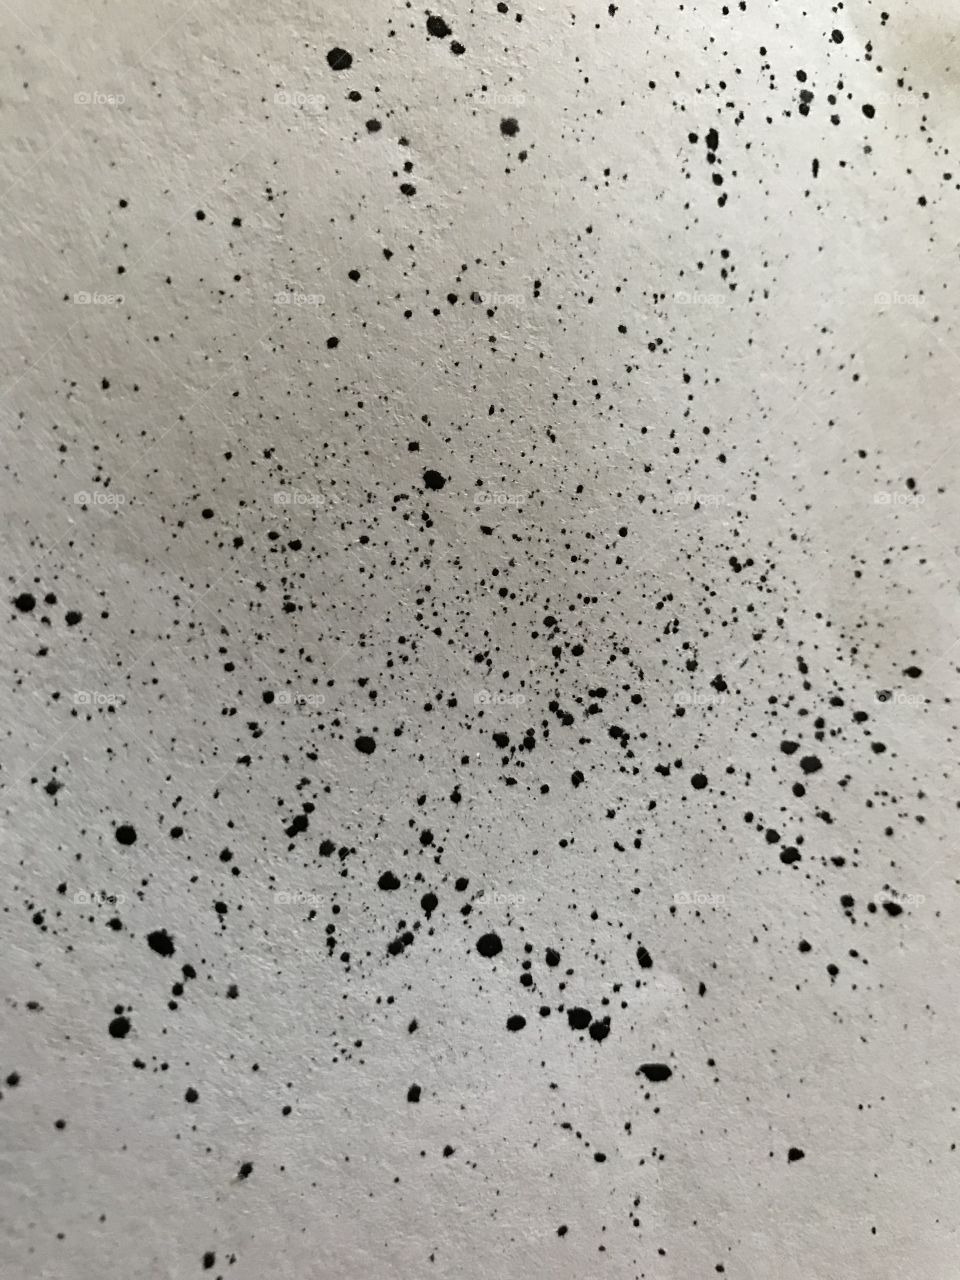 Black splatter paint